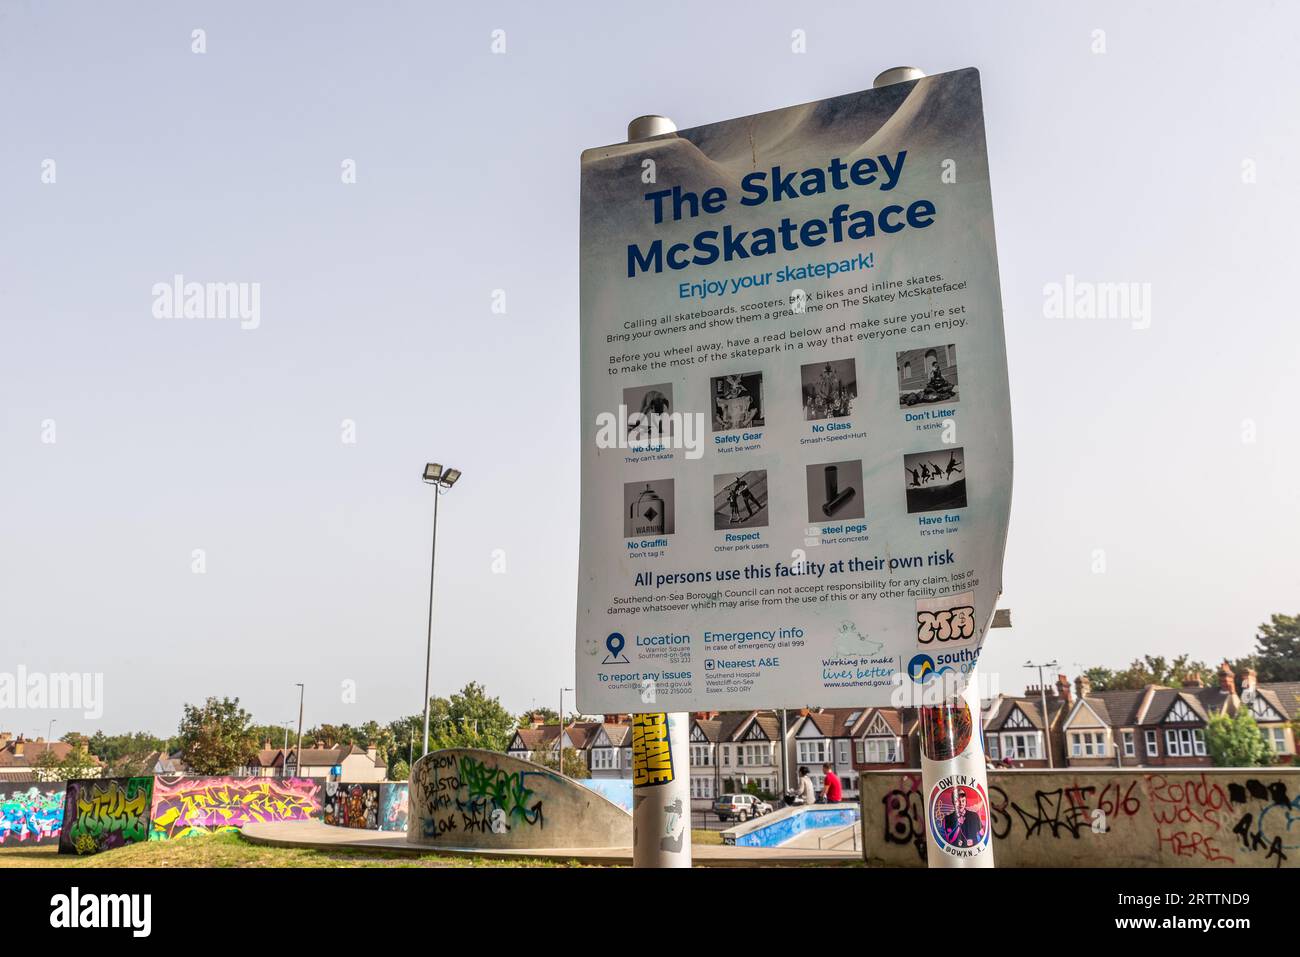 Der Skatey McSkateface Skatepark in Warrior Square, Southend on Sea, Essex, Großbritannien. Benannt nach dem öffentlichen Wahlsystem, eröffnet im Juli 2019, gebaut von Maverick Stockfoto